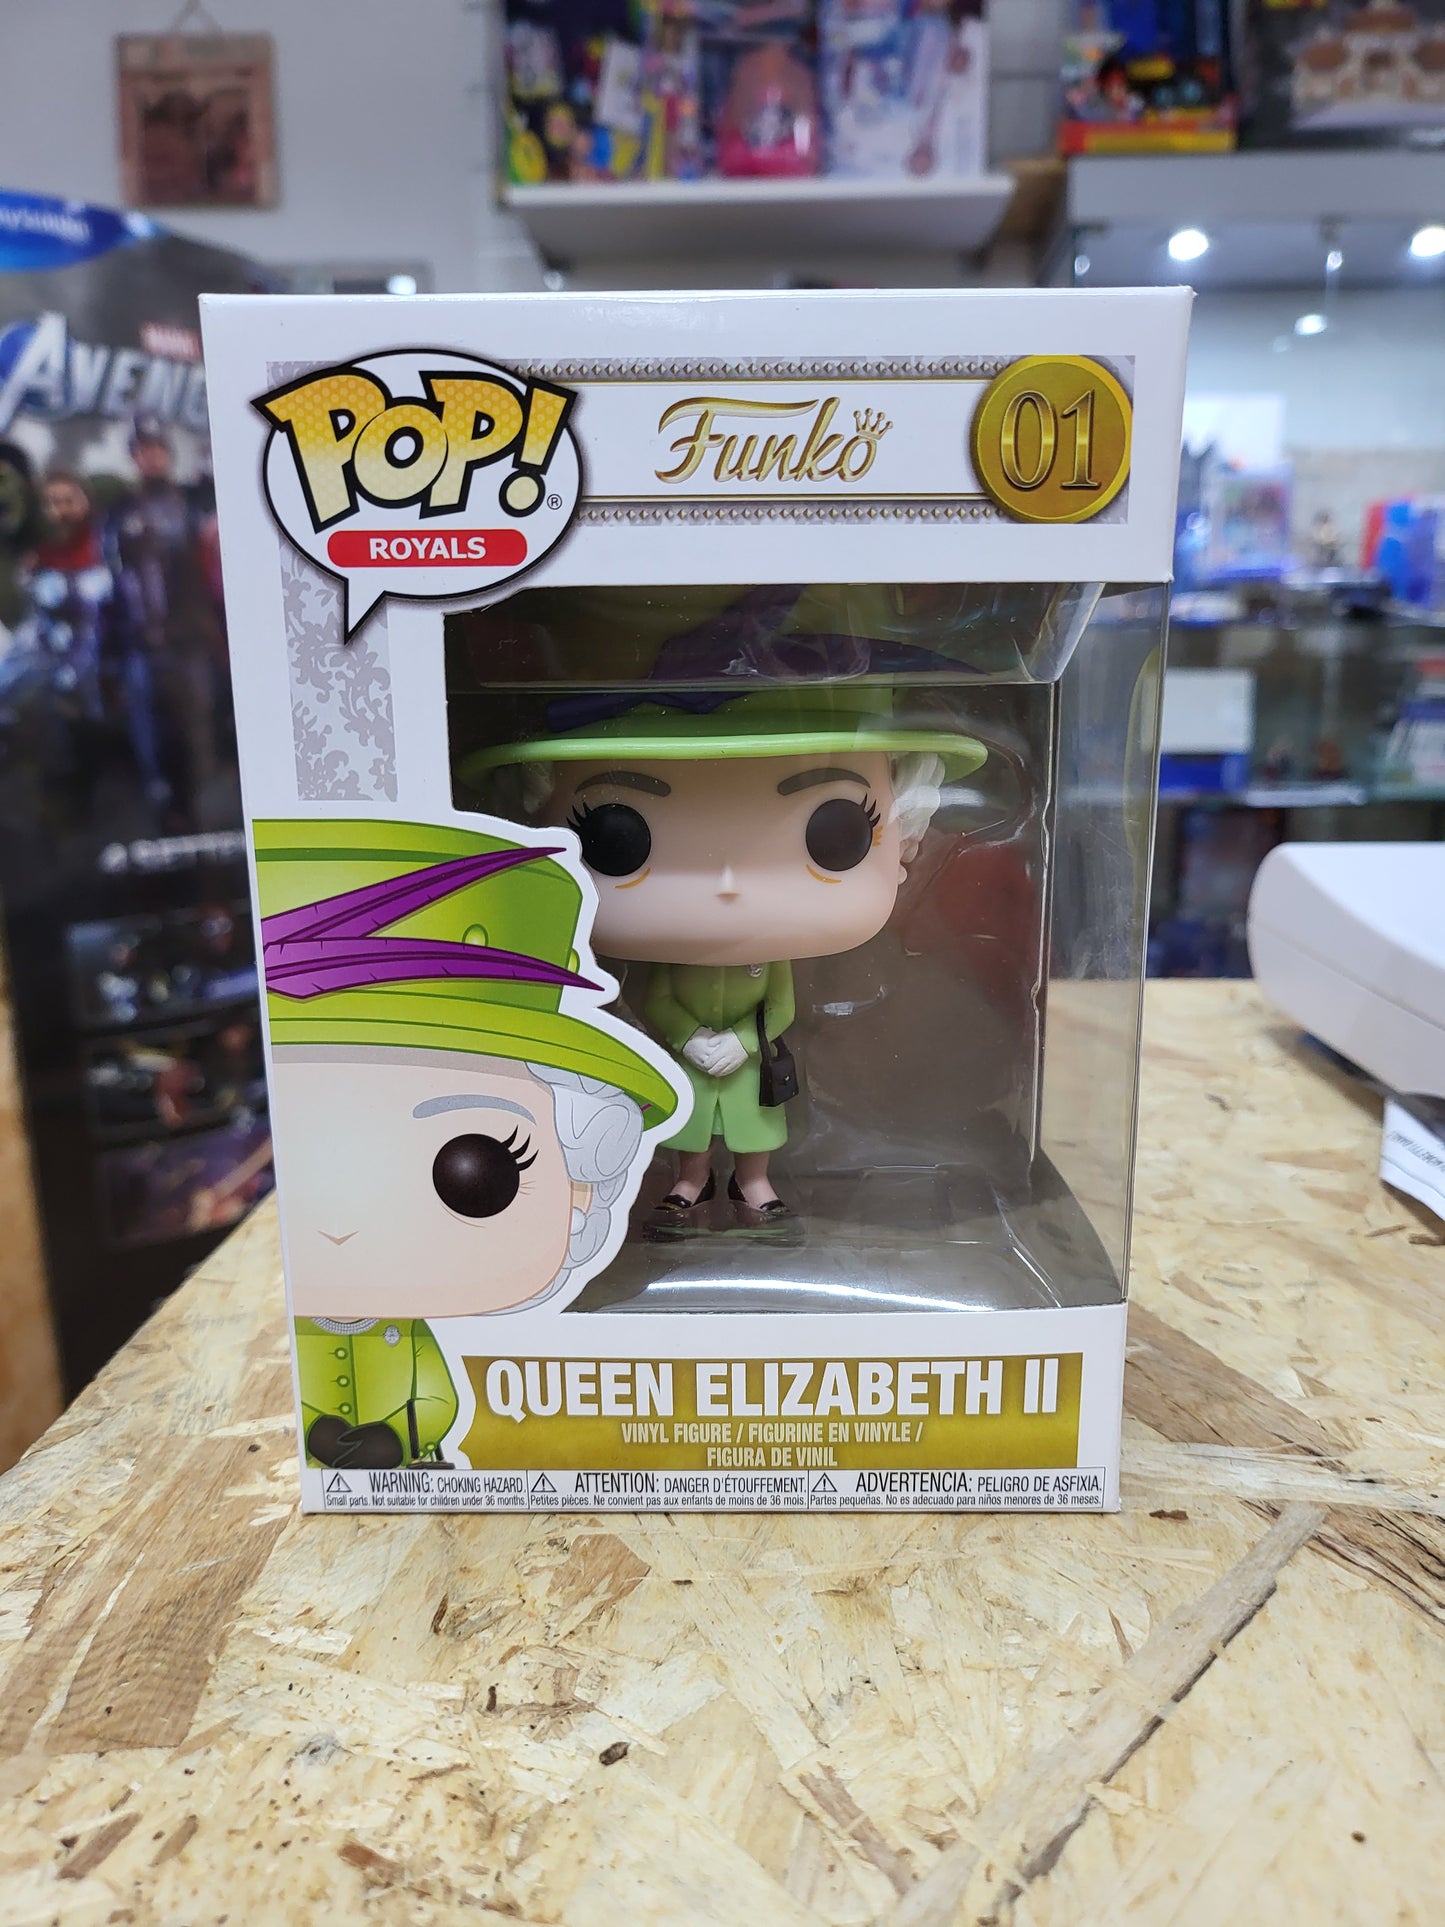 Funko pop royals 01 queen elizabeth ii